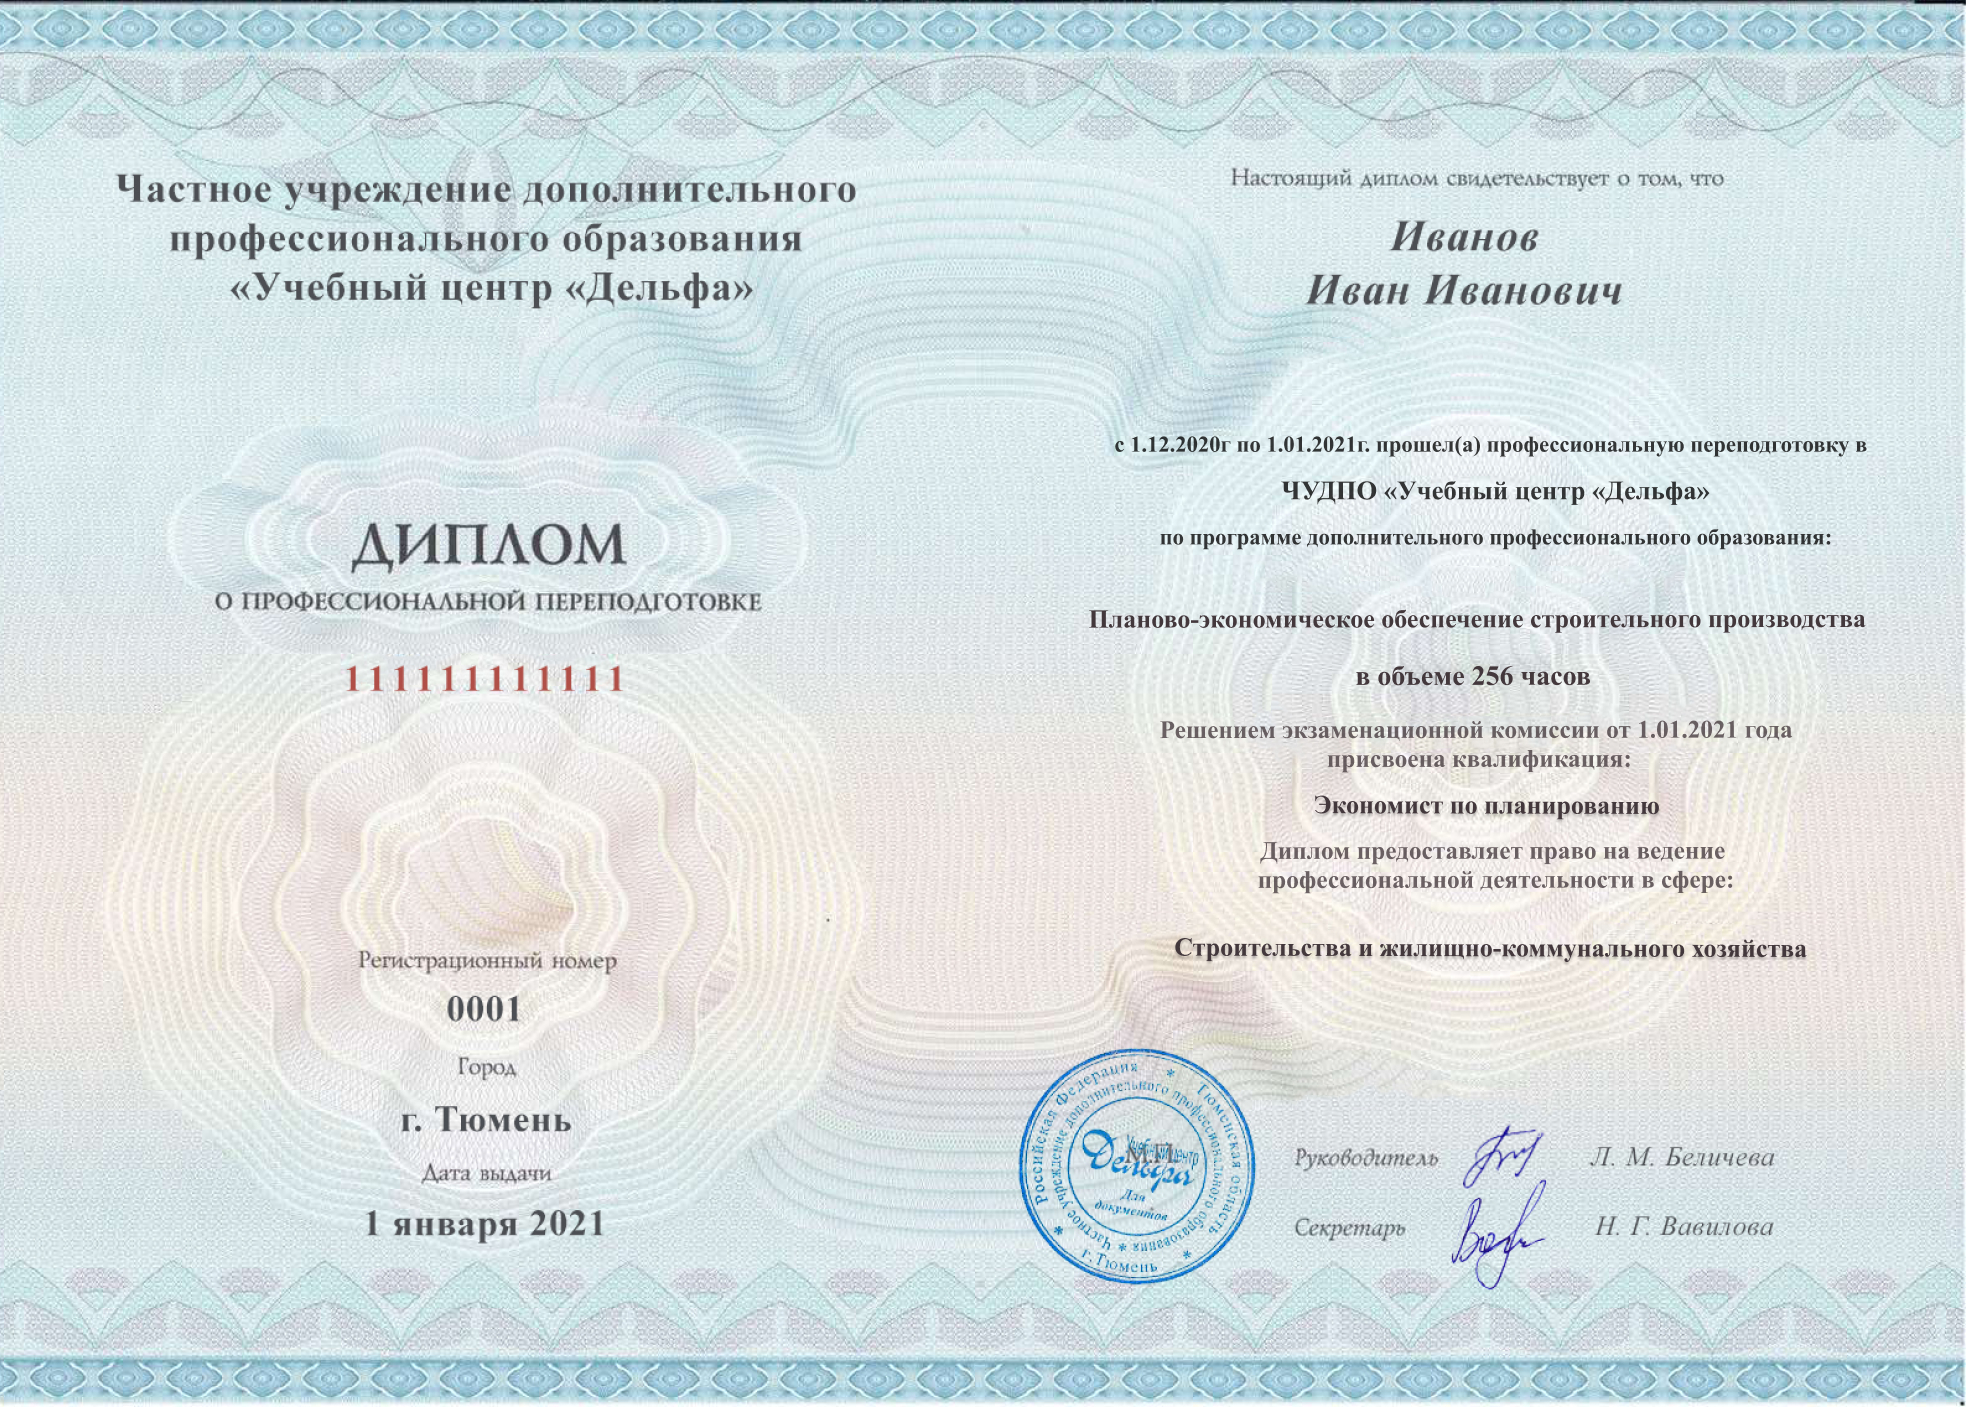 Диплом о профессиональной переподготовке с присвоением квалификации «Экономист по планированию»